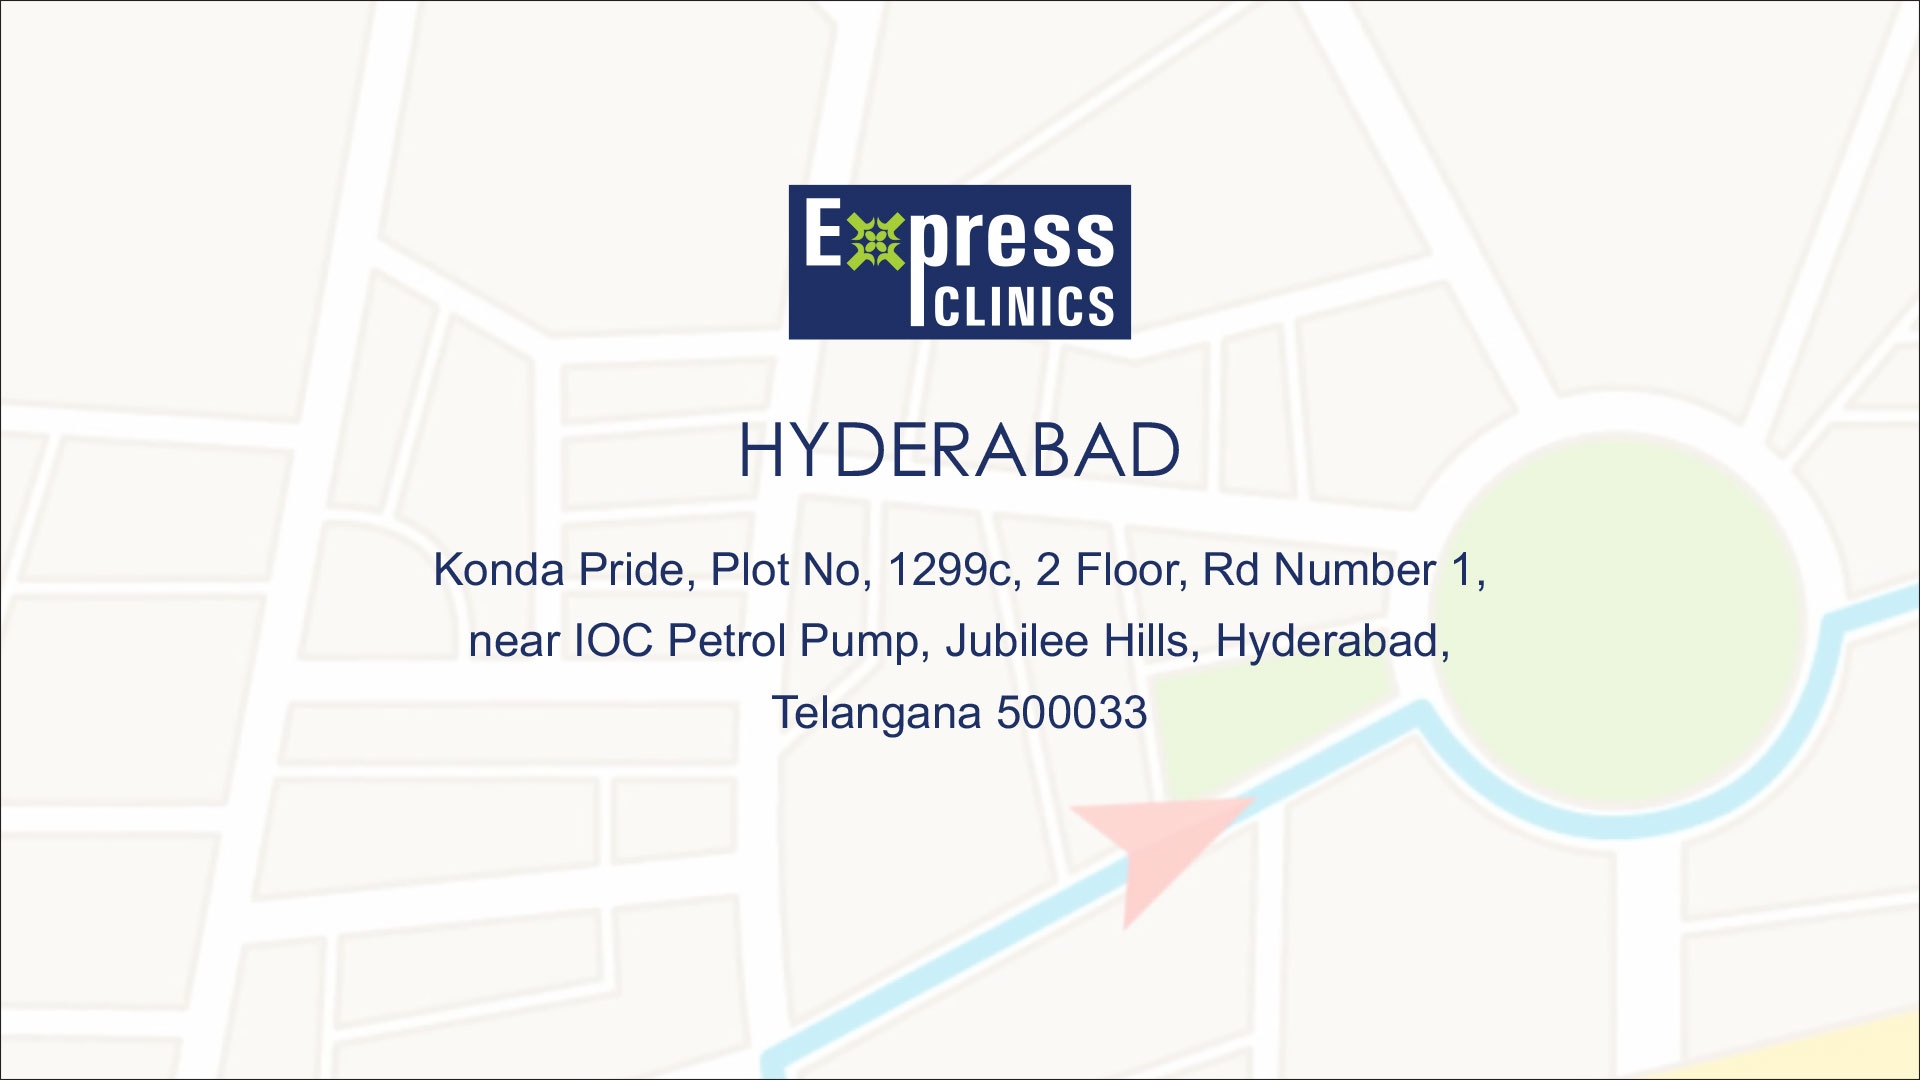 Express Clinics Hyderabad